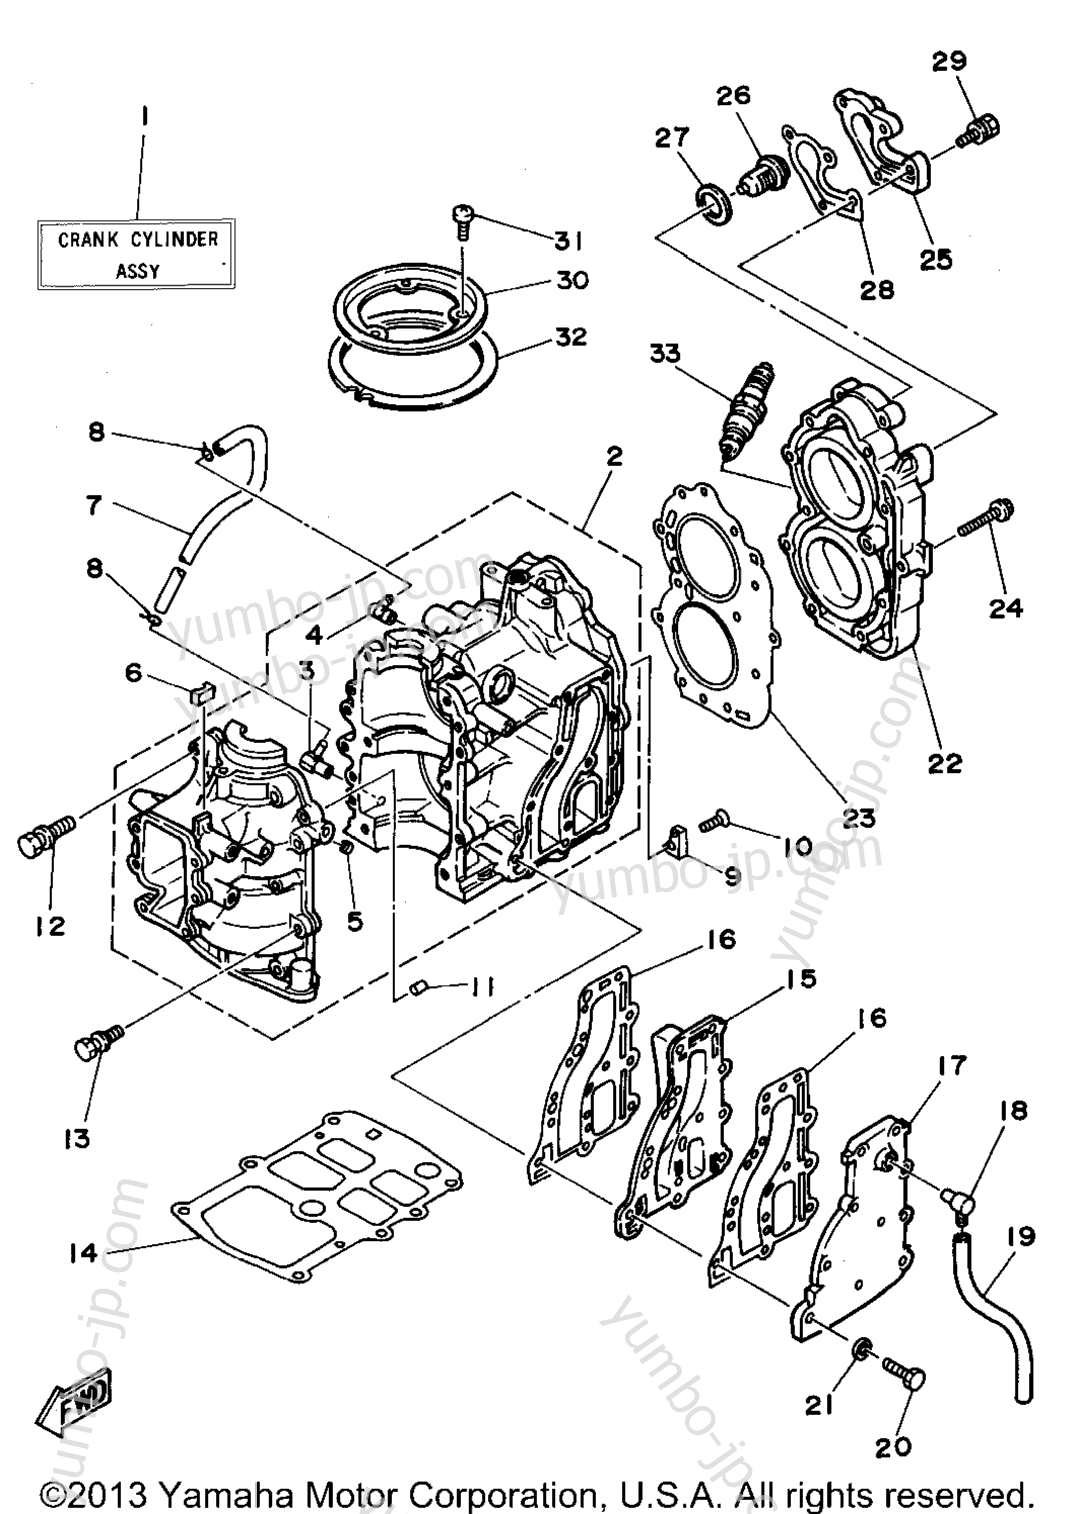 Cylinder Crankcase для лодочных моторов YAMAHA 15MLHS 1994 г.